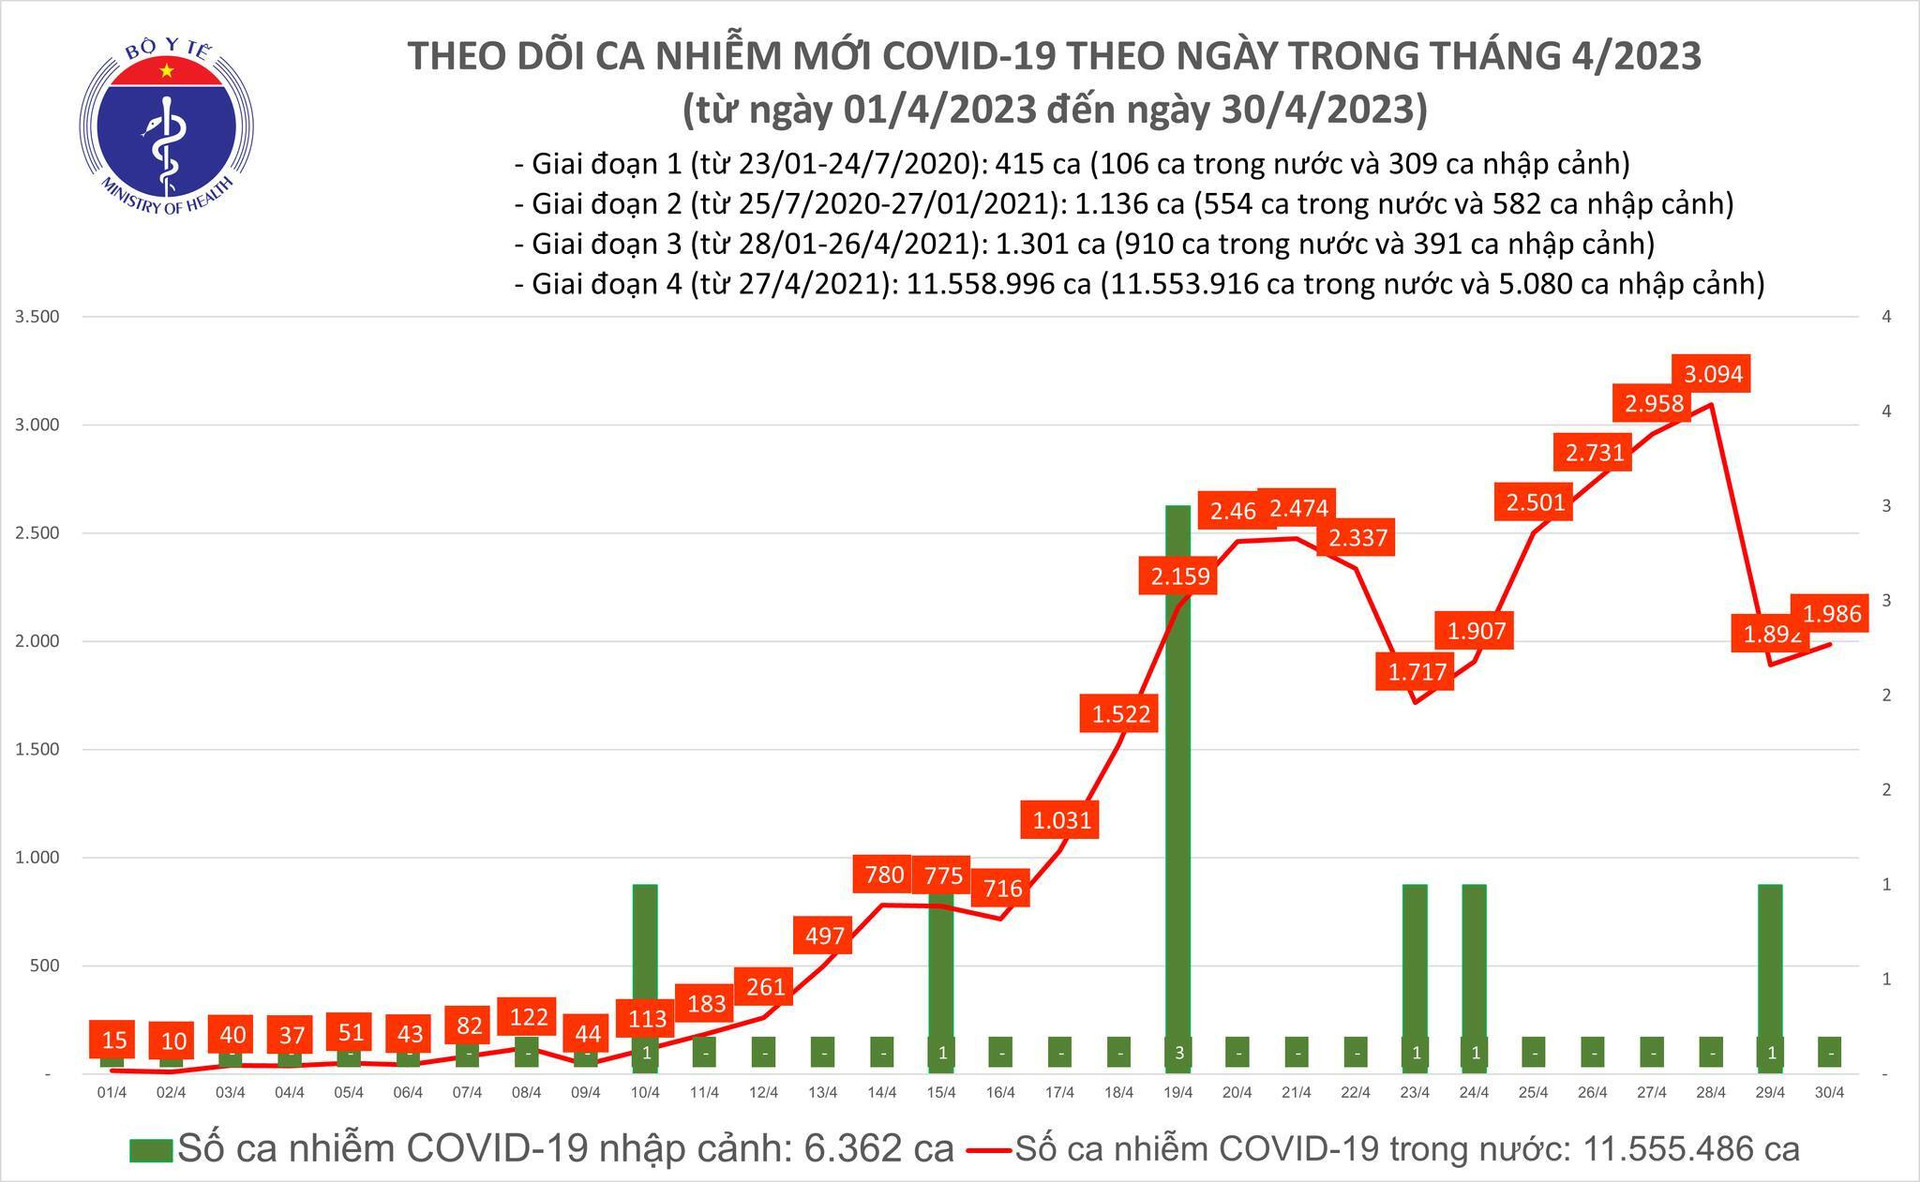 Ngày 30/4, ca mắc COVID-19 tăng trở lại, 3 ca bệnh tử vong - 1